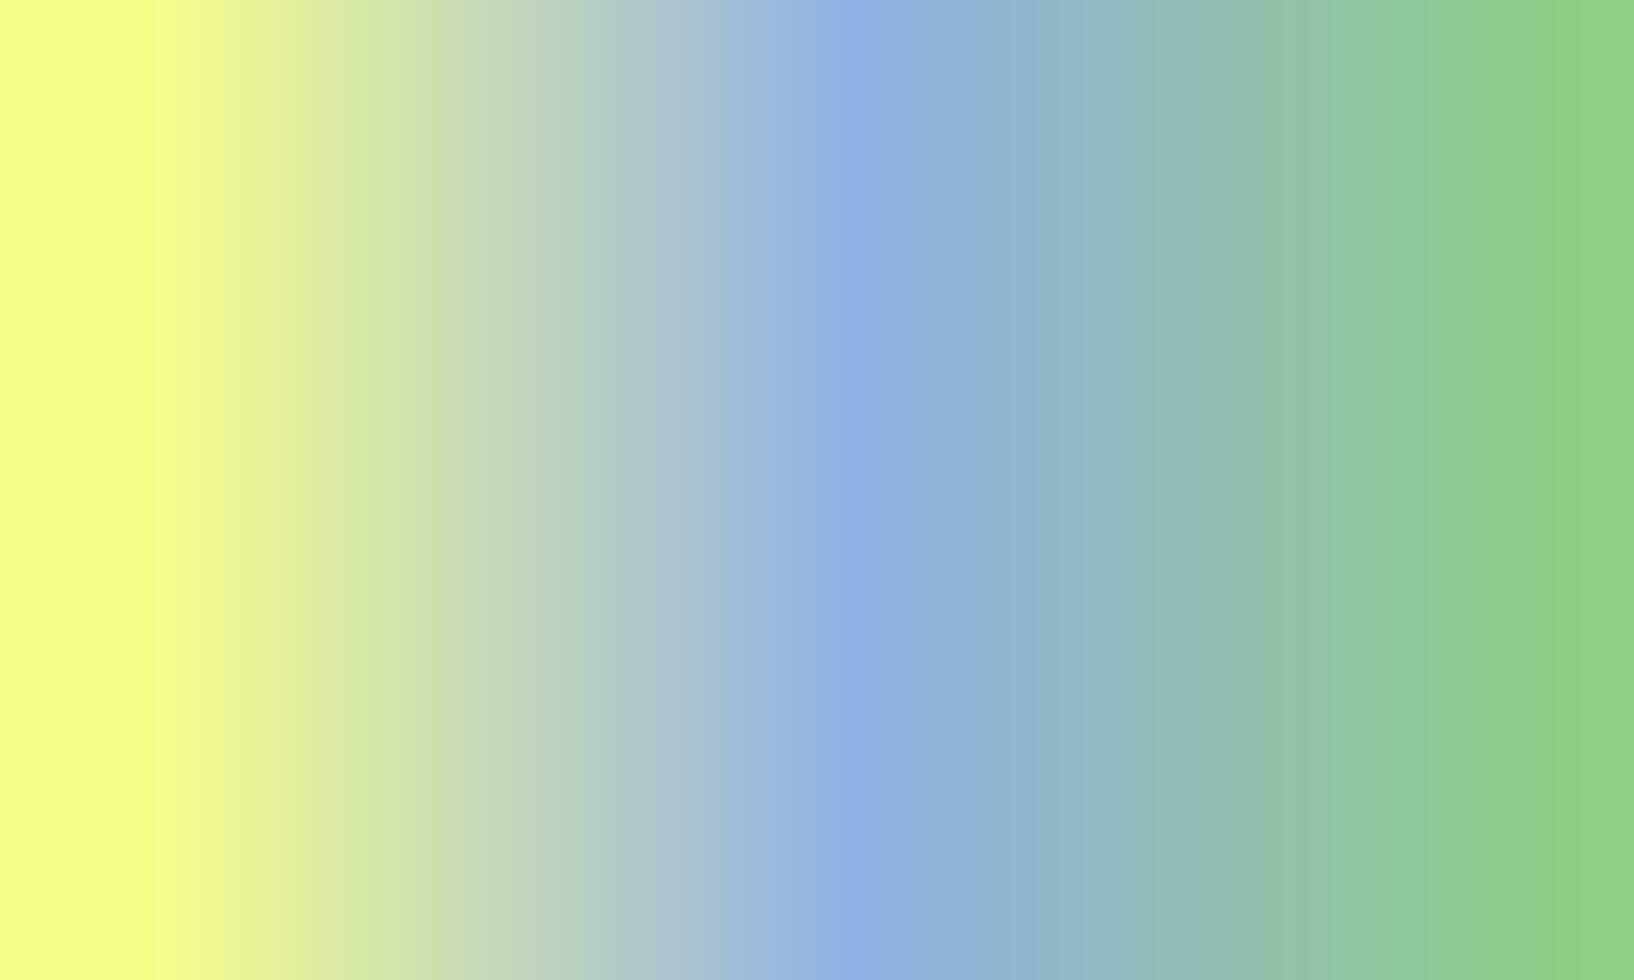 Projeto simples amarelo azul e verde gradiente cor ilustração fundo foto